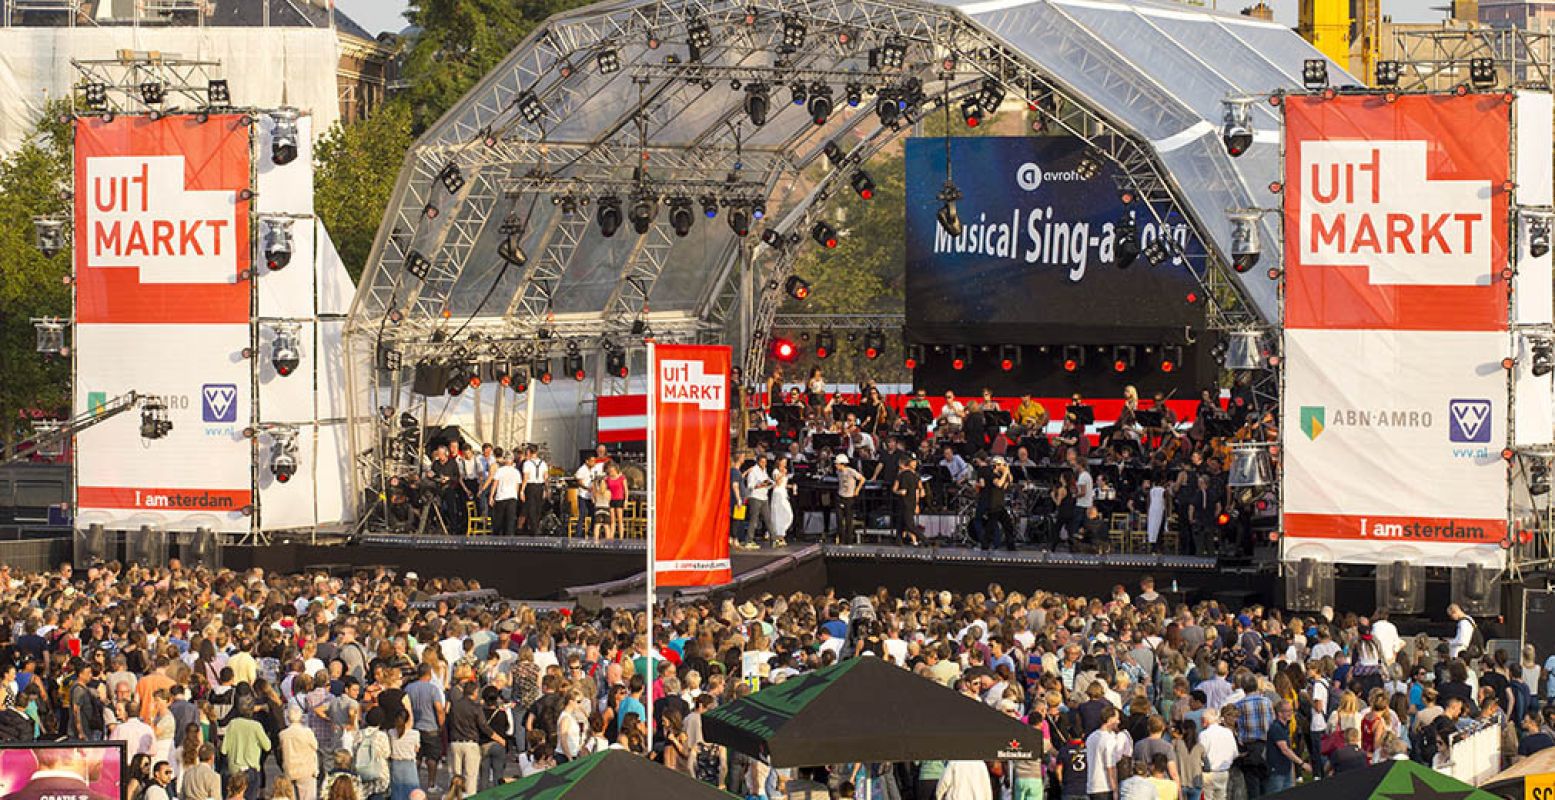 De Musical Sing-a-Long is de bekende afsluiter van de Uitmarkt. Foto: Uitmarkt, klapfilm.nl.